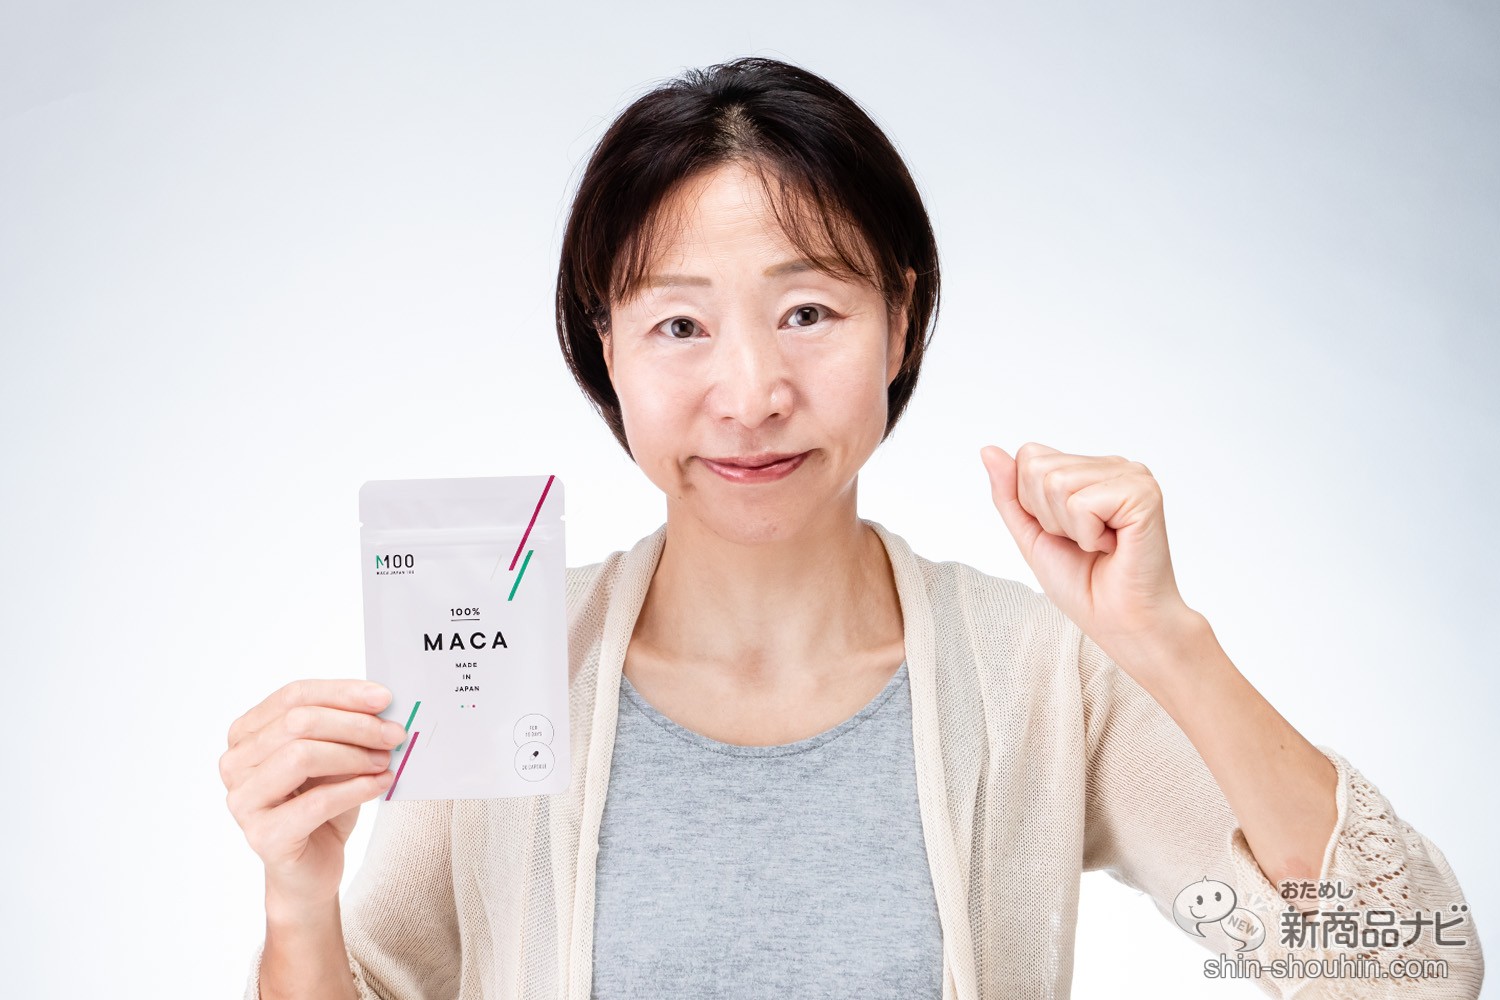 “マカ”は女性こそ飲むべきスーパーフードだった！純国産マカ高配合『MACA JAPAN 100』の驚くべきパワーとは!? おためし新商品ナビ